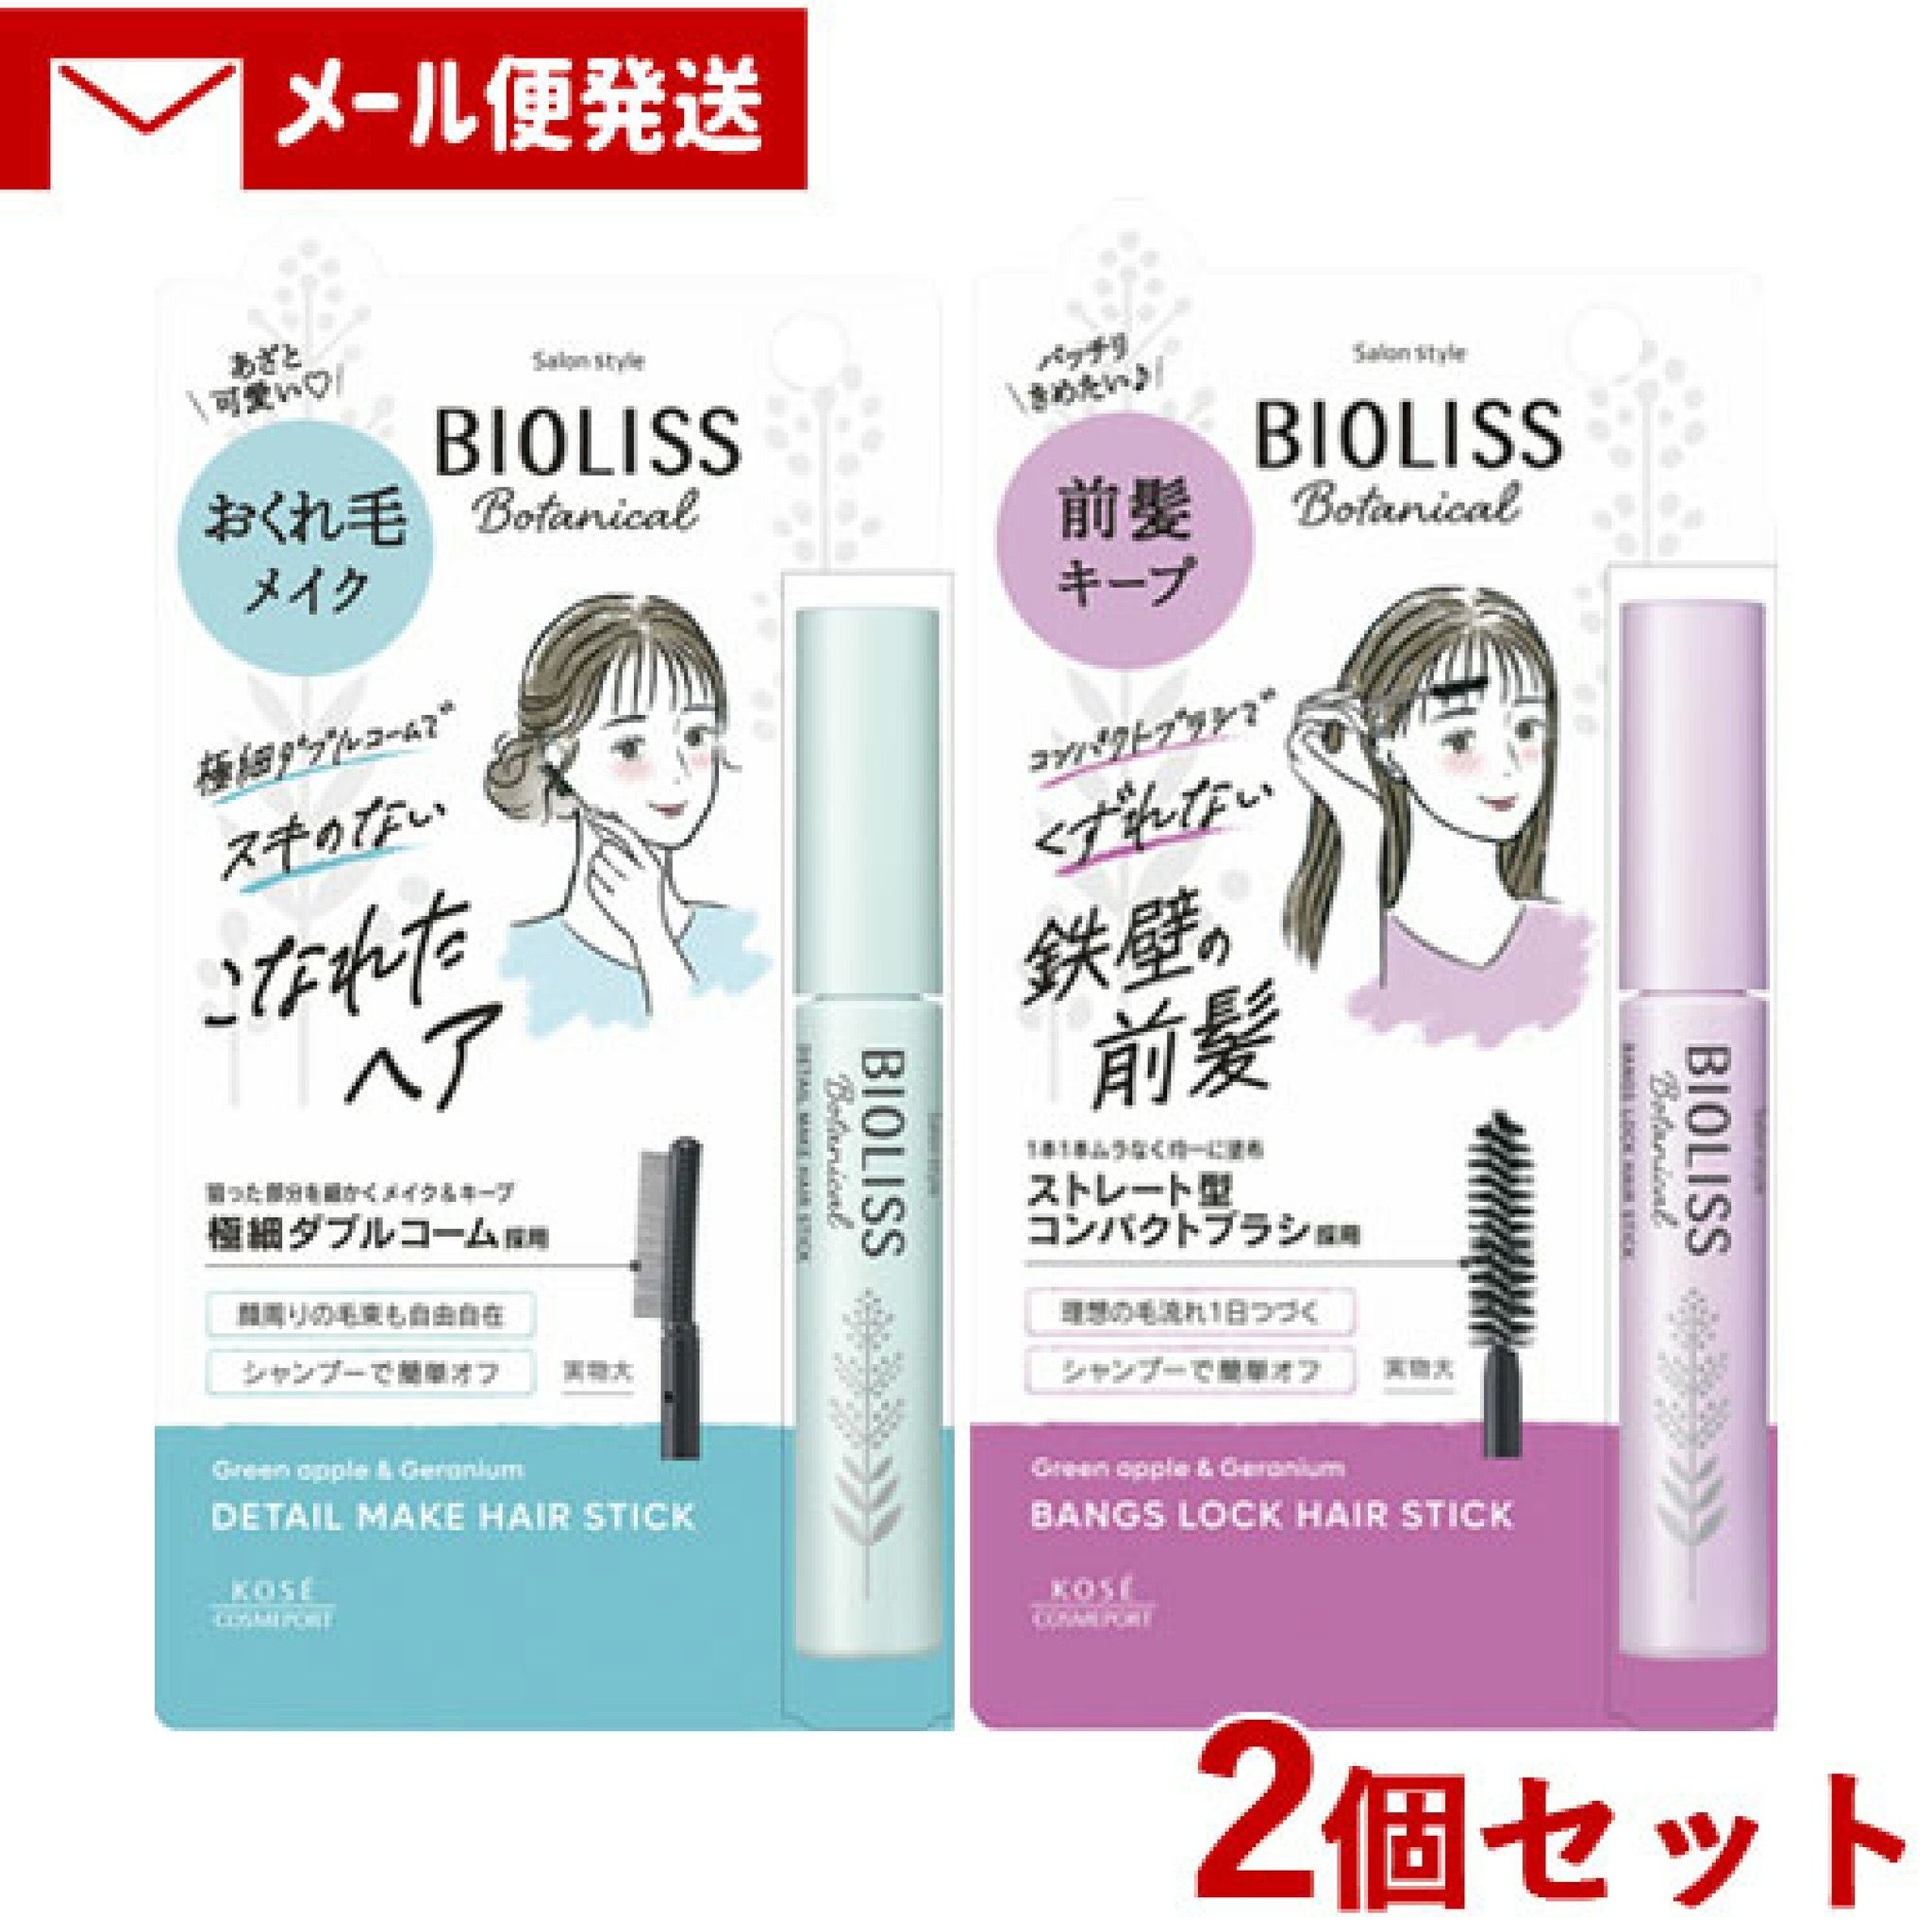 【曼曼生活】 日本代購 KOSE BIOLISS ⭕️小顏瀏海定型刷 現貨*1